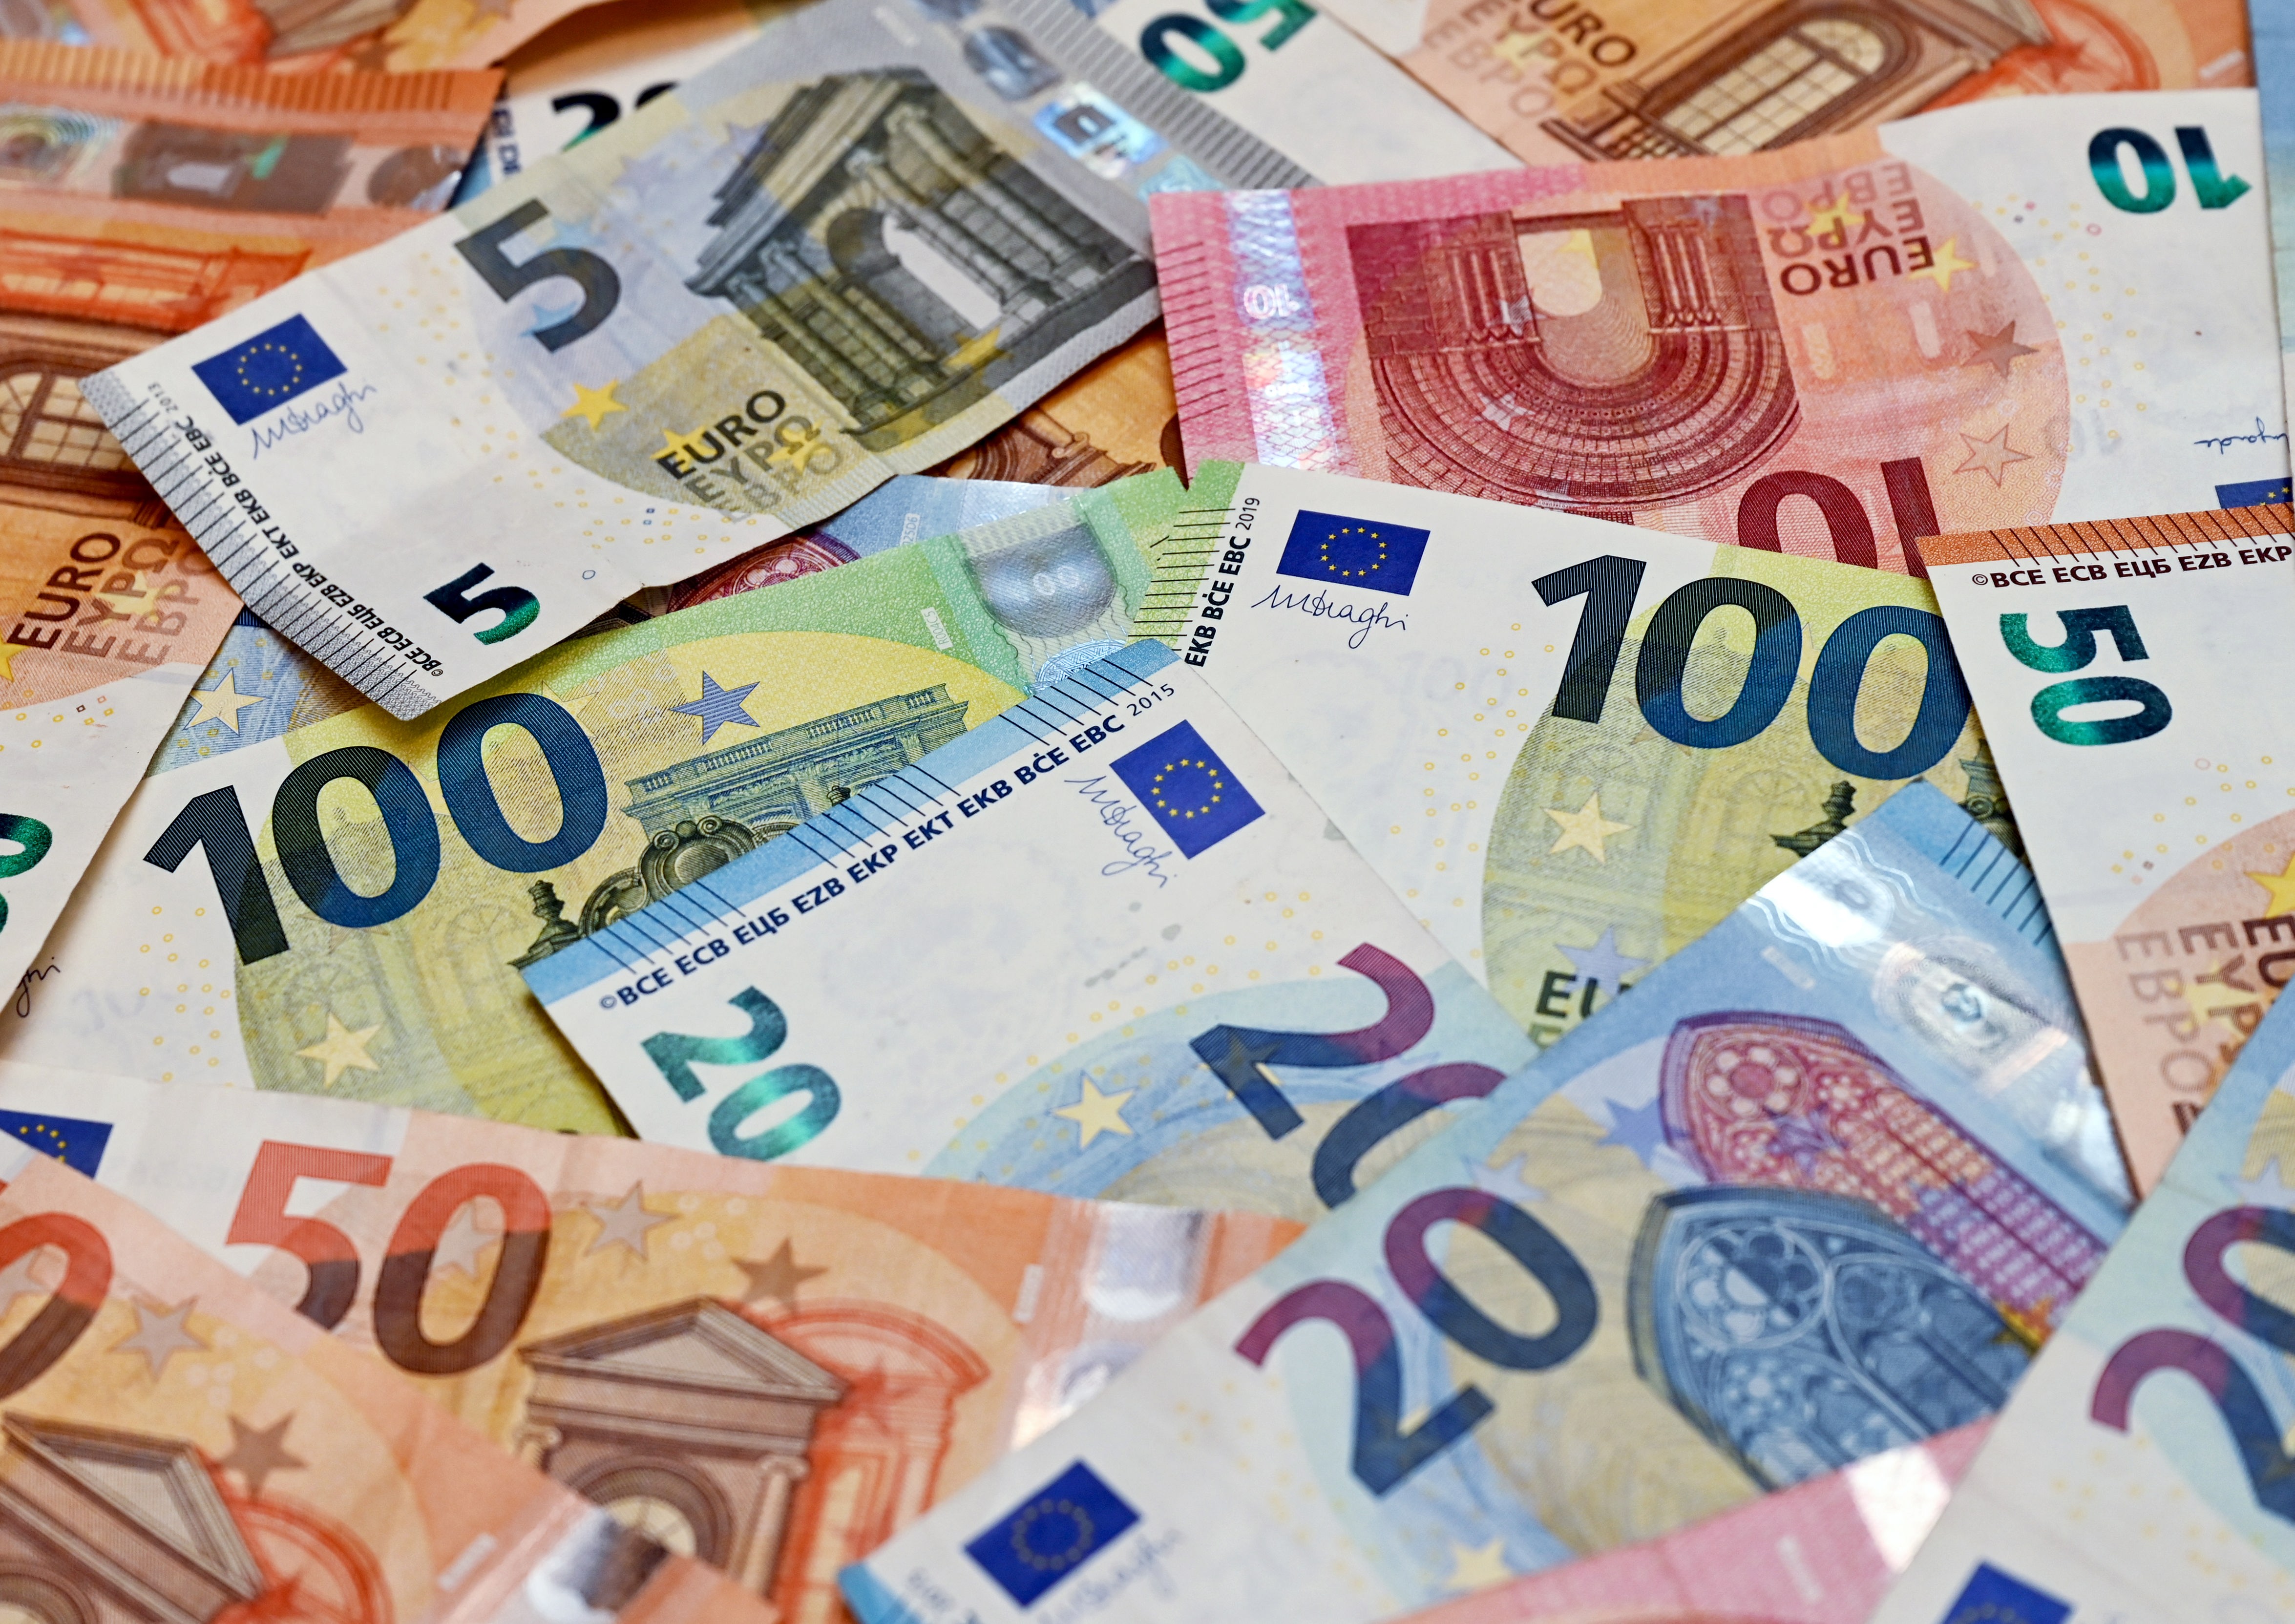 Addio 1 Cent und 2 Cent – Italien schafft die kleinsten Euro-Cent-Münzen ab